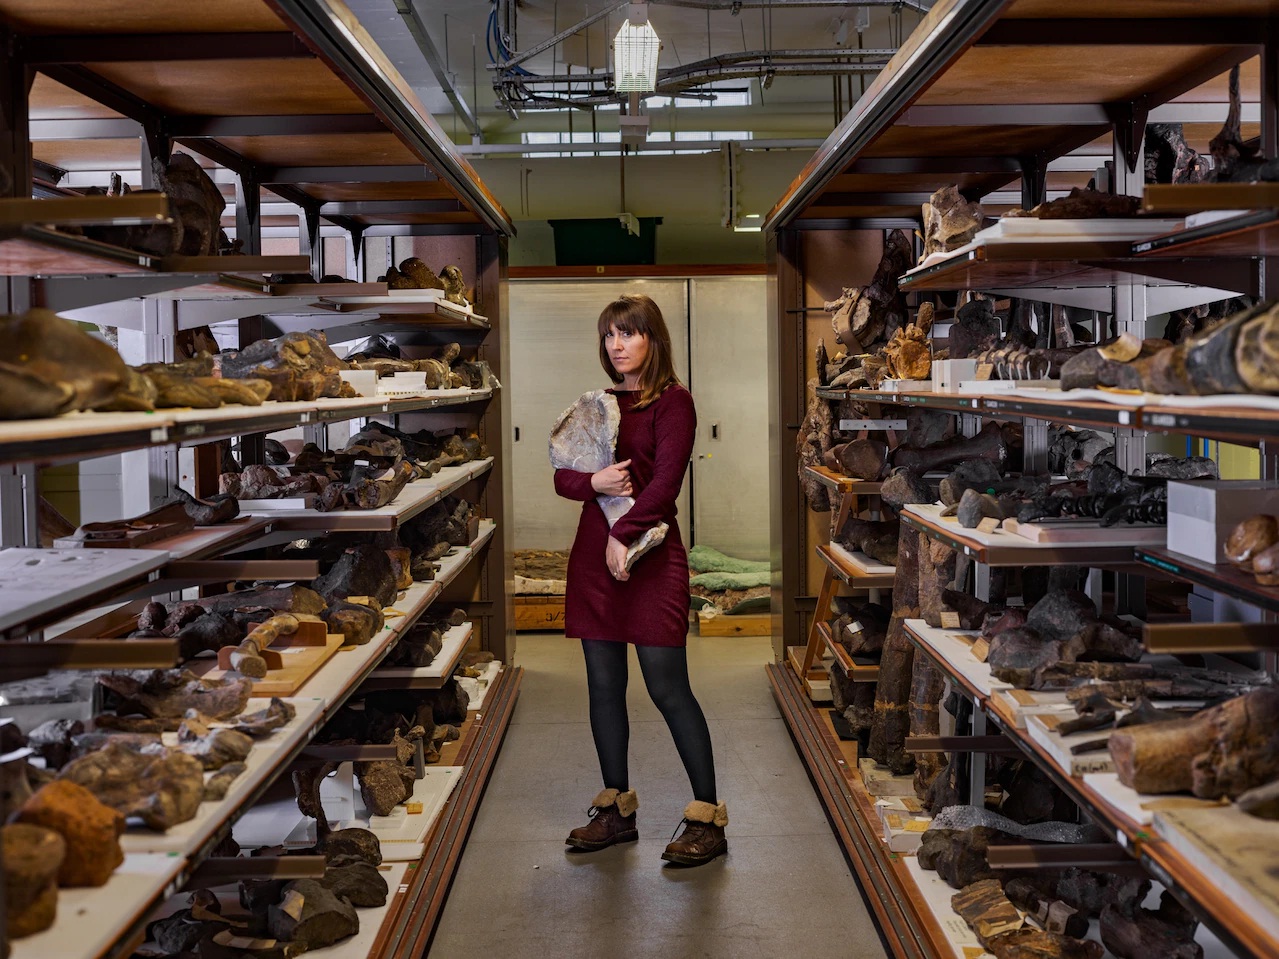 Ngoài tổ chức trưng bày, các bảo tàng cũng bảo quản và nghiên cứu nhiều hoá thạch. Bảo tàng Lịch sử Tự nhiên Anh lưu giữ những mảnh xương được coi là duy nhất của Adratiklit, loài khủng long mái cổ nhất từng khám phá. Năm 2019, một nhóm do giám tuyển Susannah Maidment dẫn đầu đã tuyên bố Adratiklit thuộc một chi mới, một phần dựa trên xương cánh tay cô đang cầm ở đây.